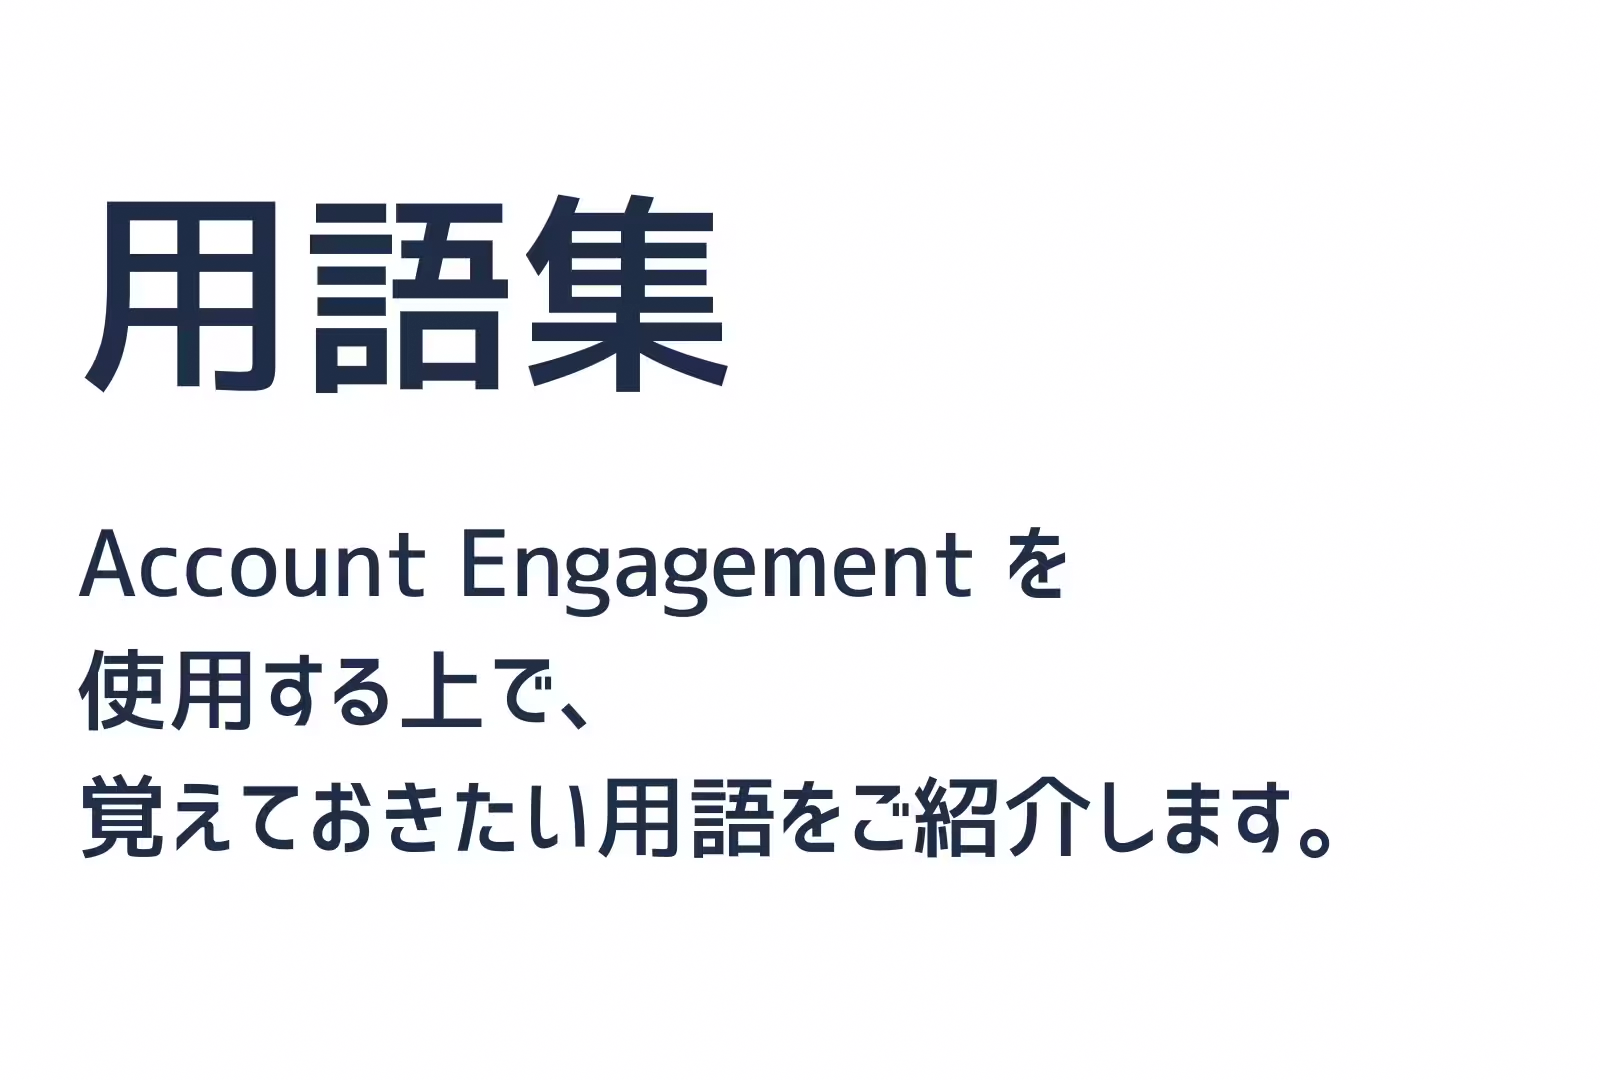 Account Enagagementを使用する上で、覚えておきたい用語をご紹介します。